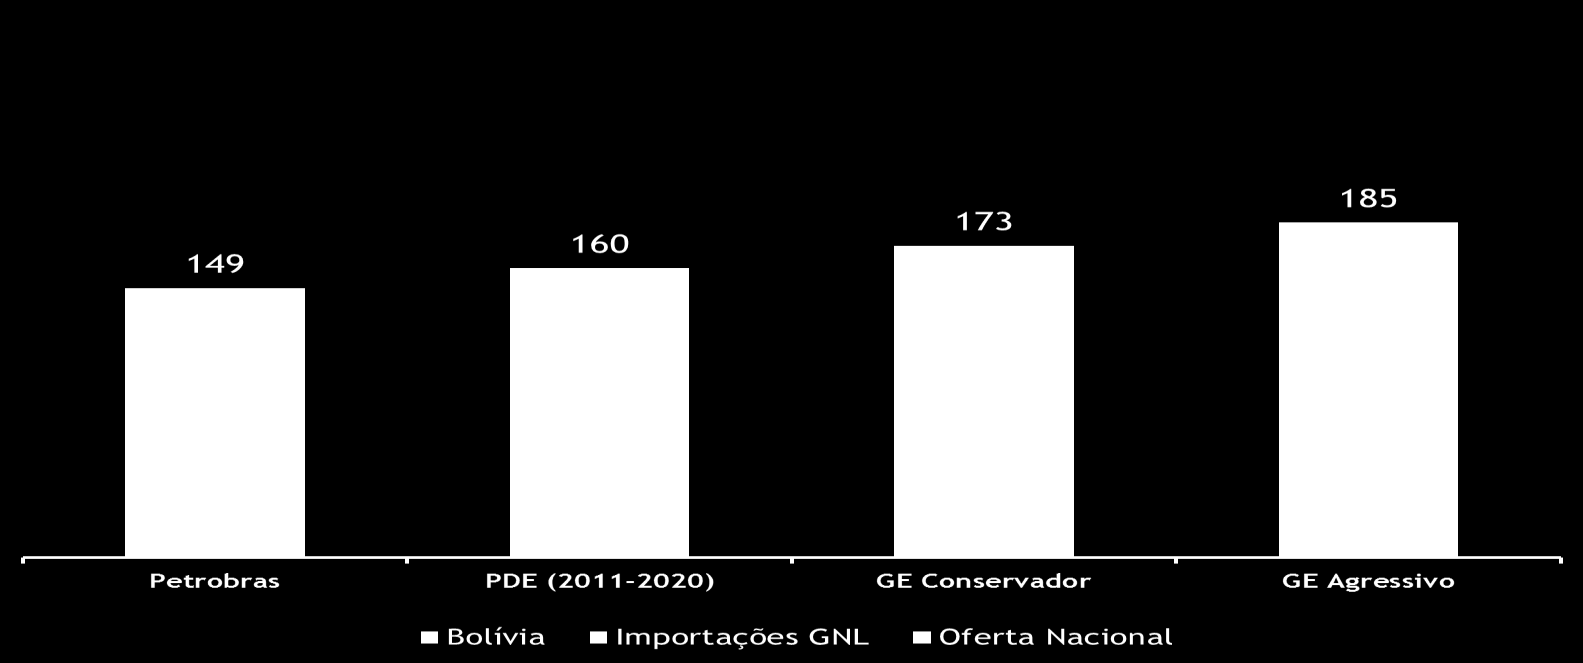 Projeção da Oferta Comparação Gas Energy x Petrobras x PDE Mm 3 /d 2015 2020 Oferta Nacional não desconta